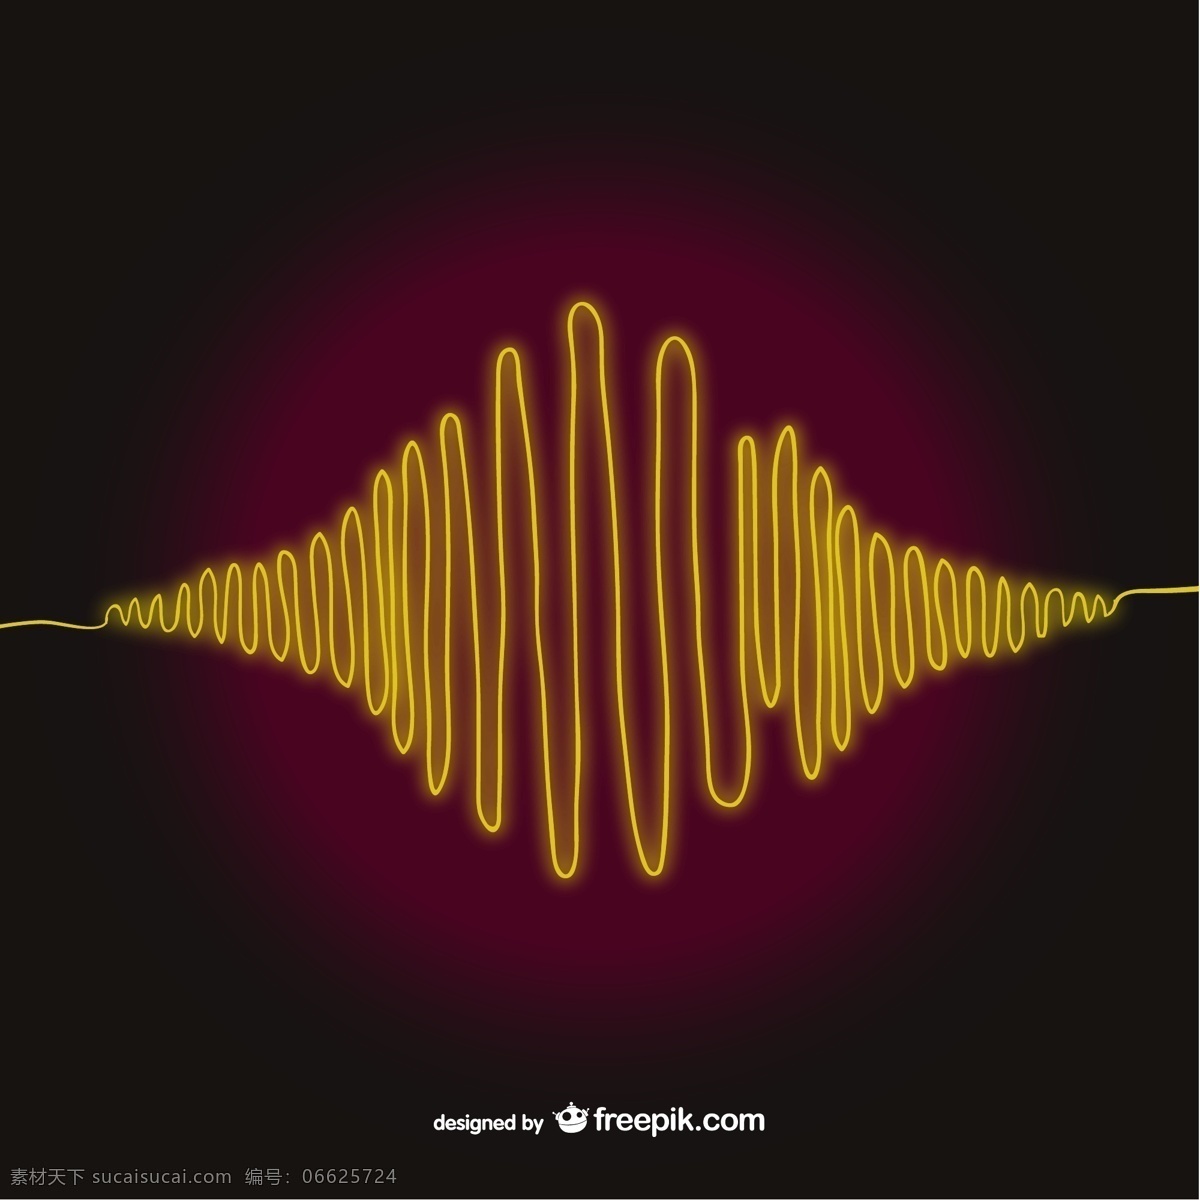 黄色的声波 背景 抽象 模板 波 艺术 声音 黄色 黄色背景 音响 均衡器 摘要波 声波 明亮 编辑 波背景 黑色